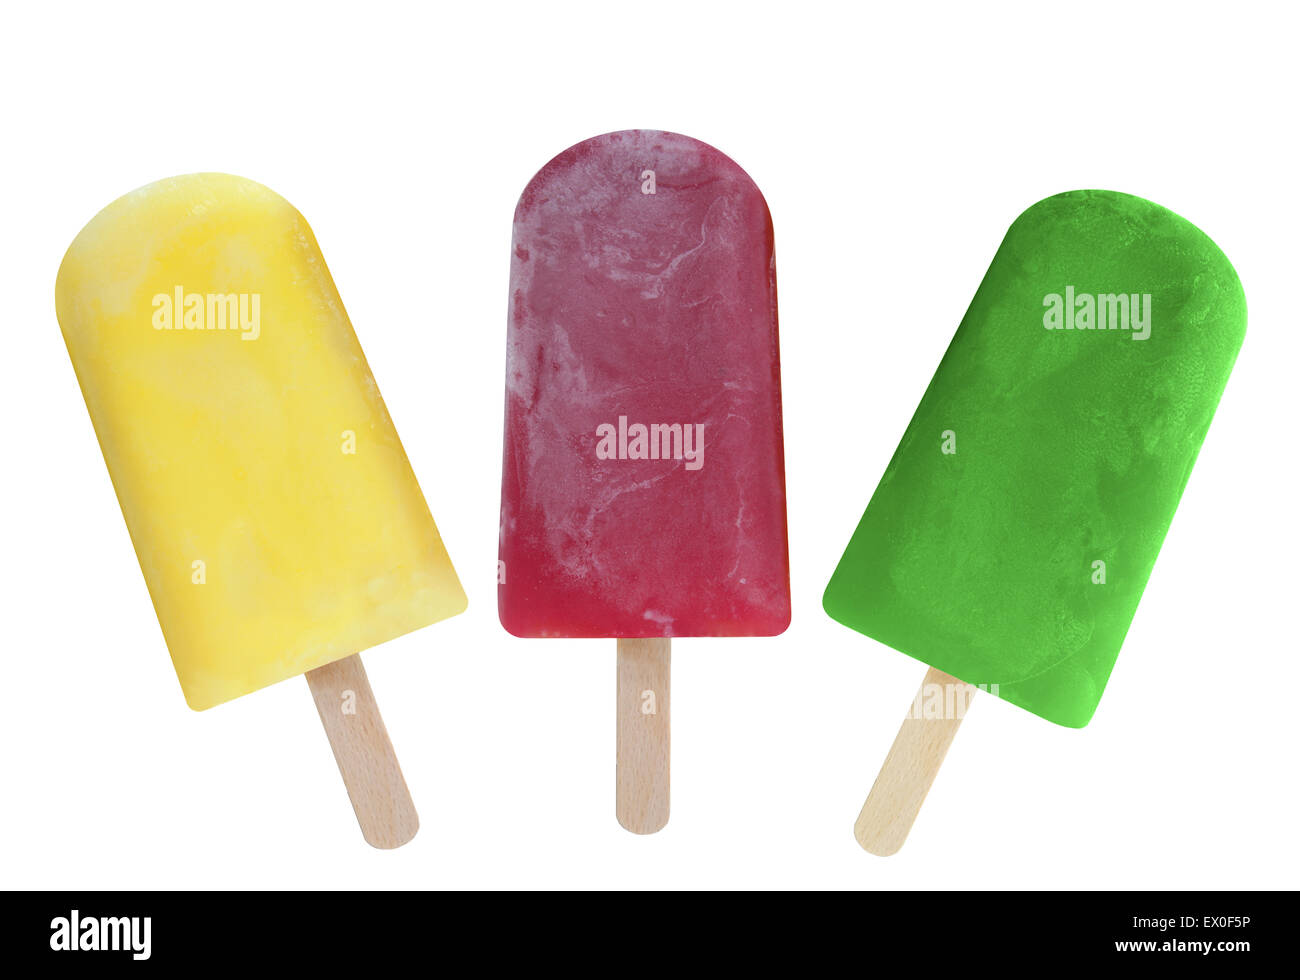 Fruit ice lollies immagini e fotografie stock ad alta risoluzione - Alamy